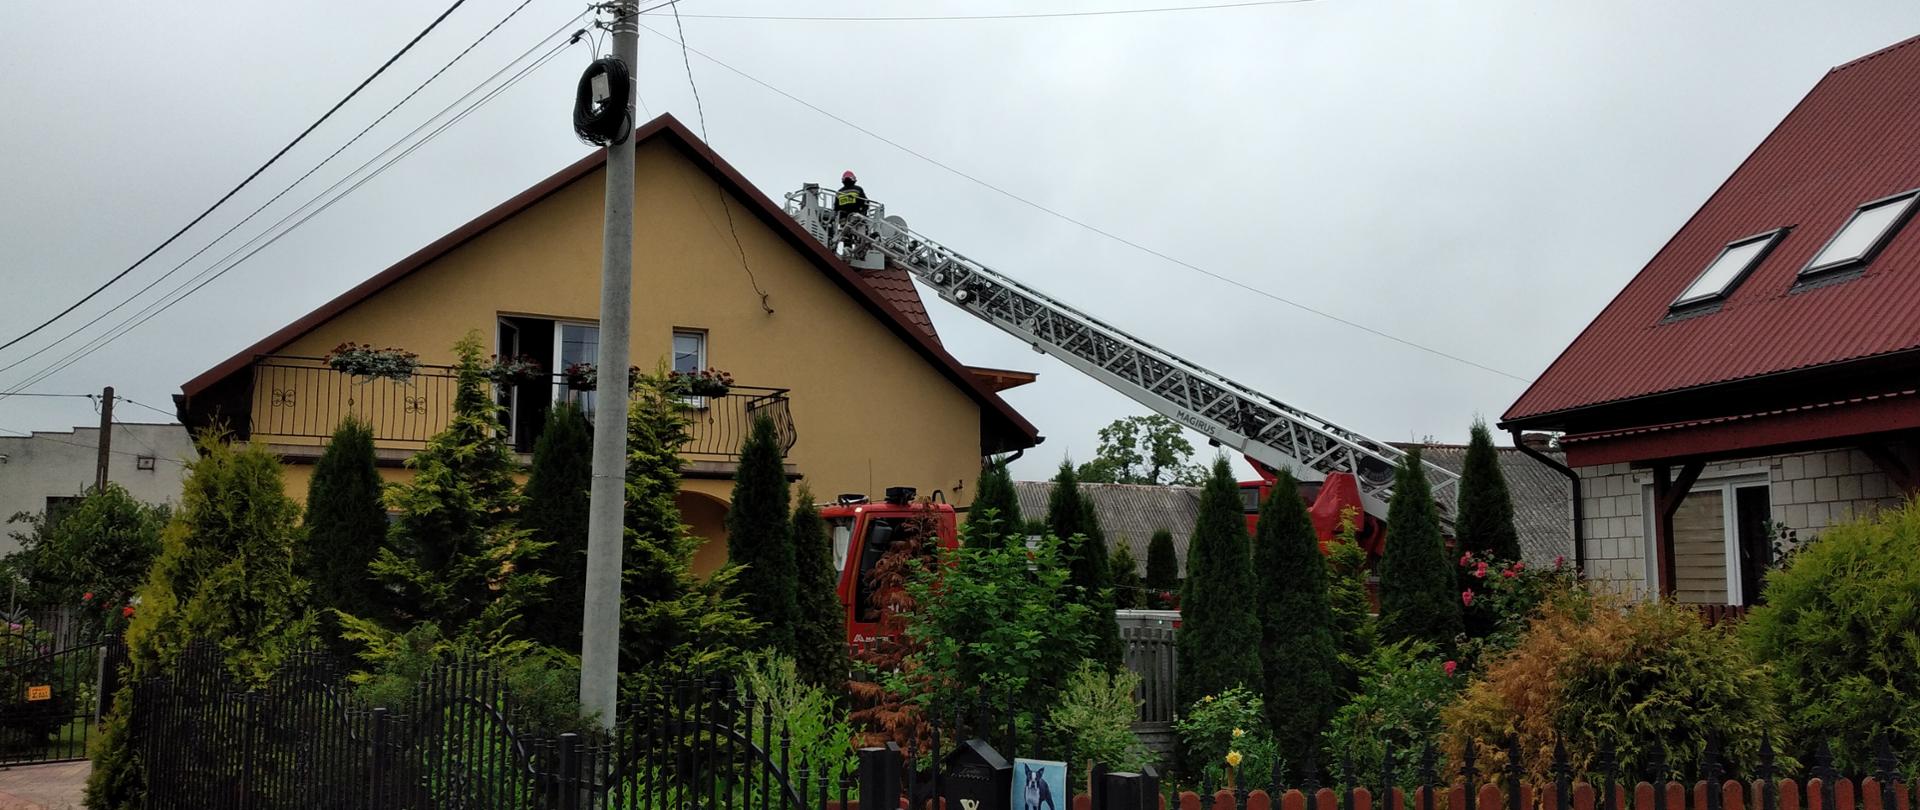 Budynek jednorodzinny w miejscowości Korczyn : prowadzenie akcji ratowniczo-gaśniczej na dachu budynku. Widać drabinę mechaniczną i strażaka pracującego nad dachem.